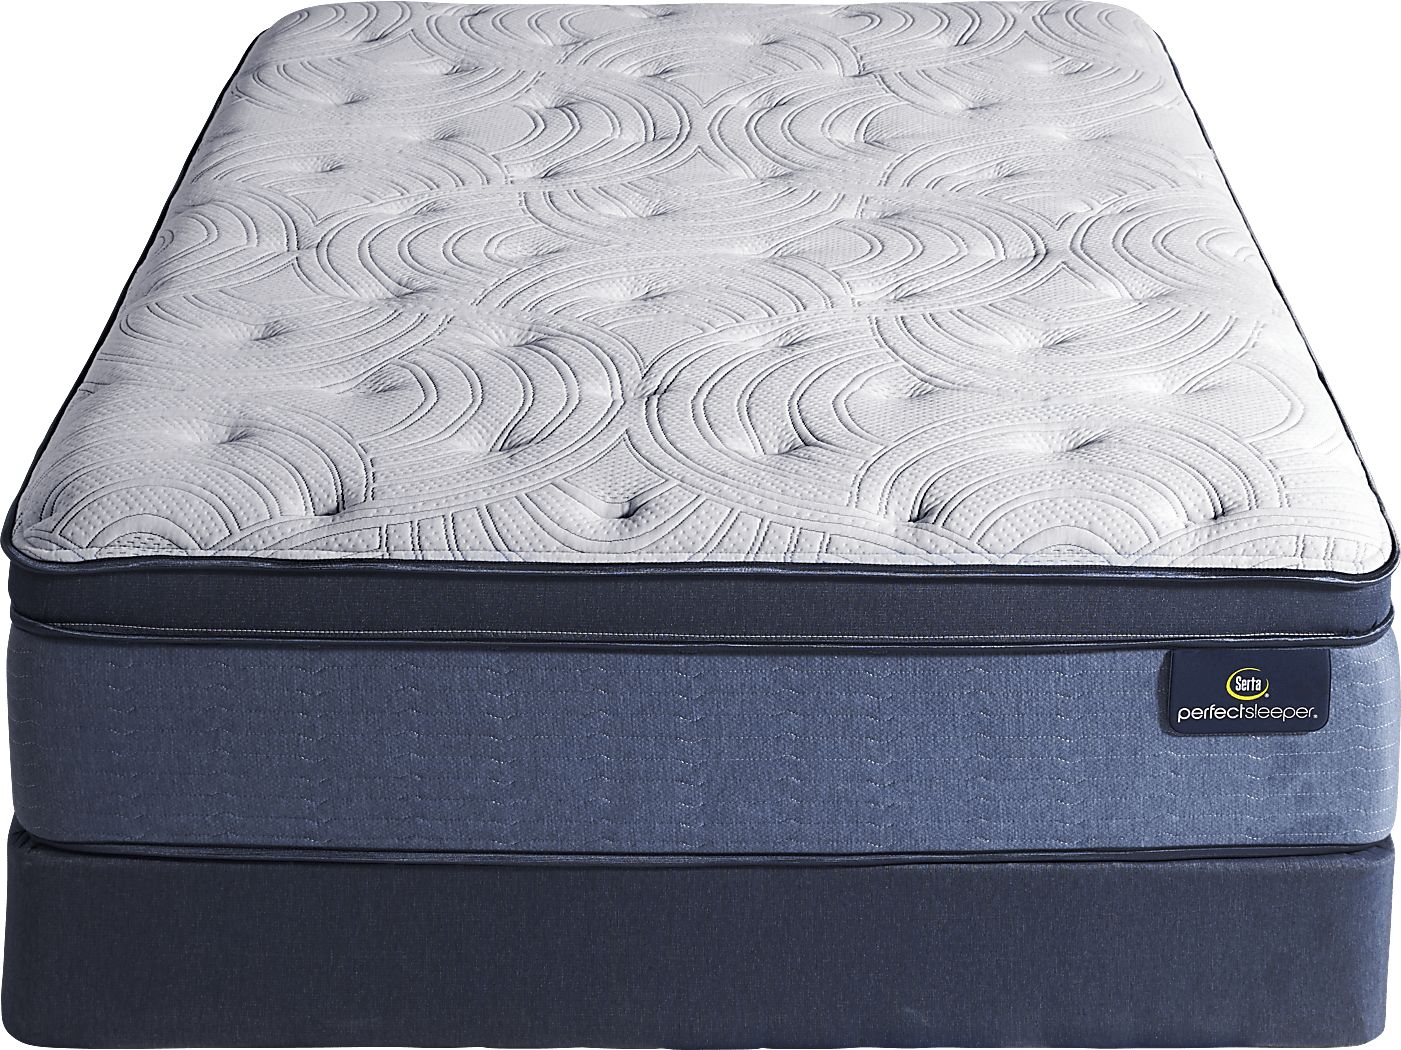 serta perfect sleeper amesburg queen mattress reviews